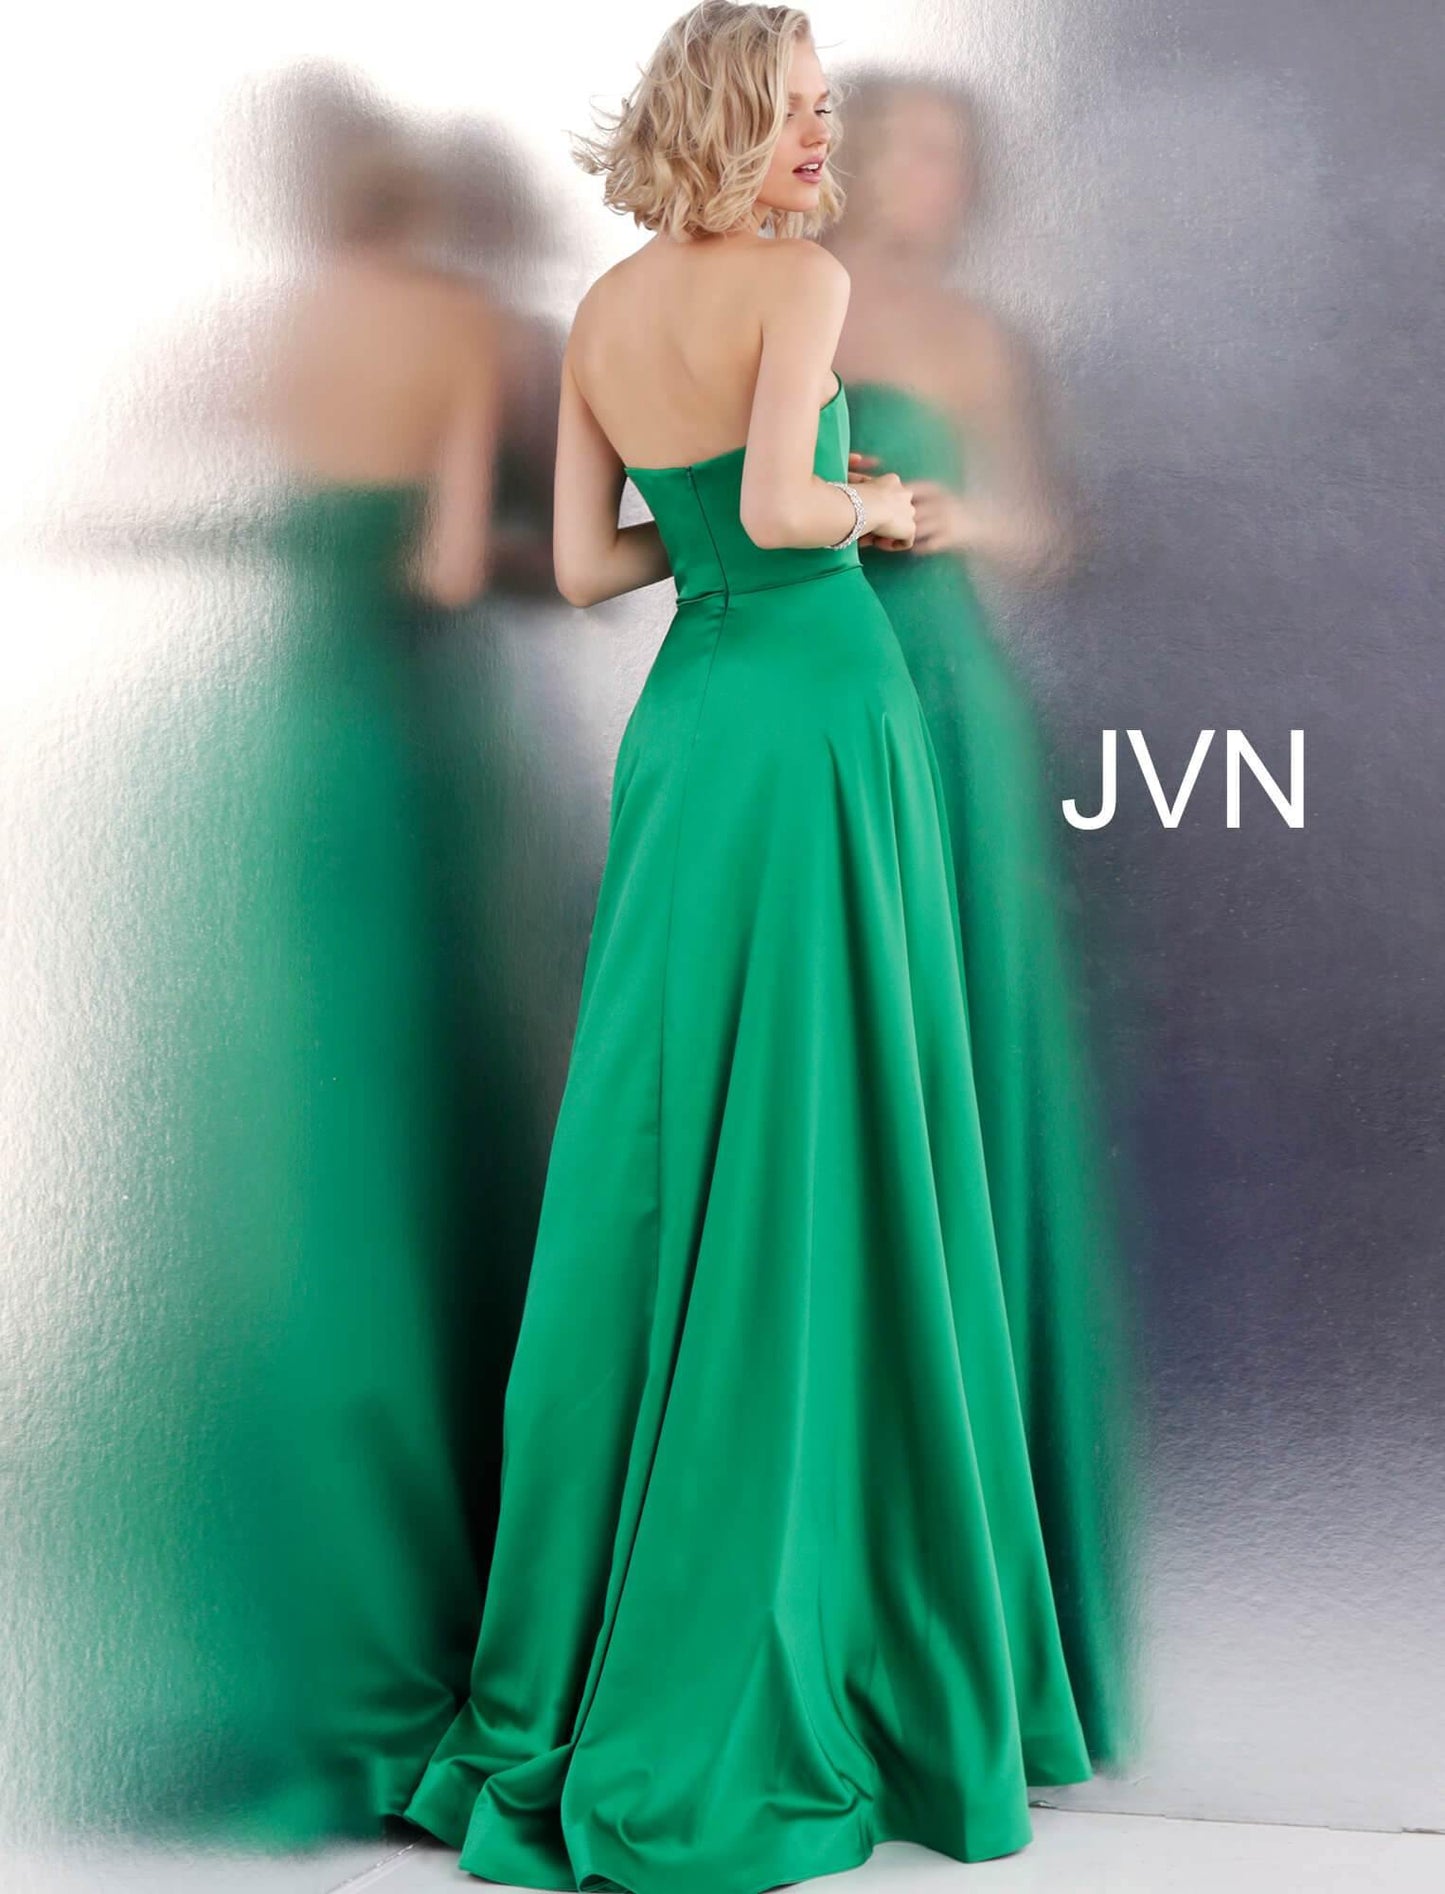 JVN By Jovani Prom Long Dress JVN67753 Emerald - The Dress Outlet Jovani